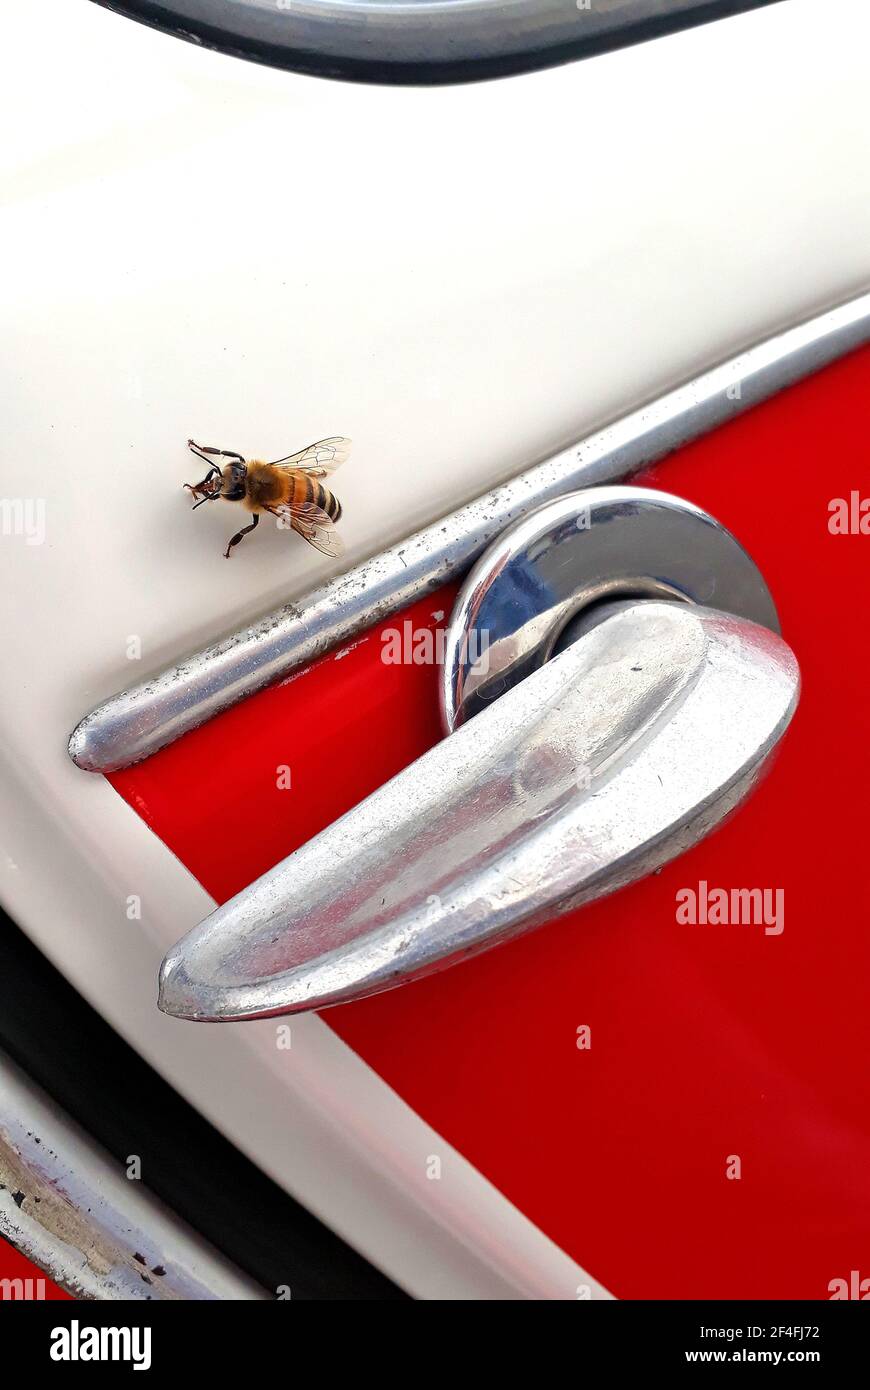 Abeille simple sur une poignée de porte Citroën 2CV Banque D'Images